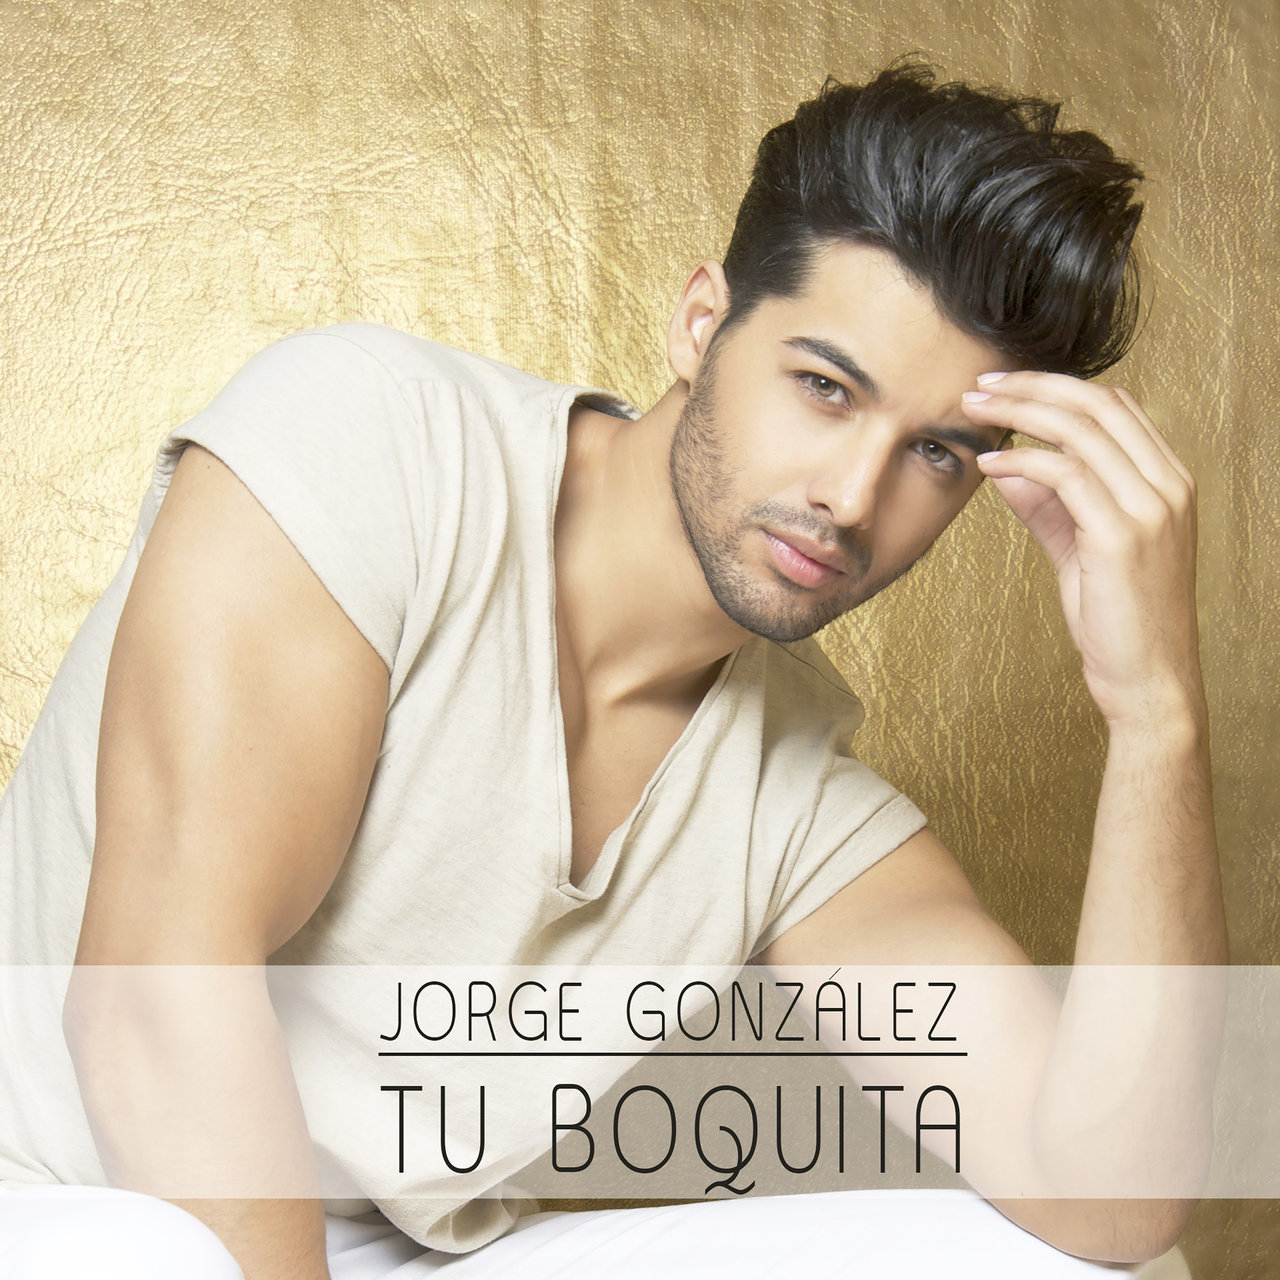 Jorge González Tu Boquita cover artwork